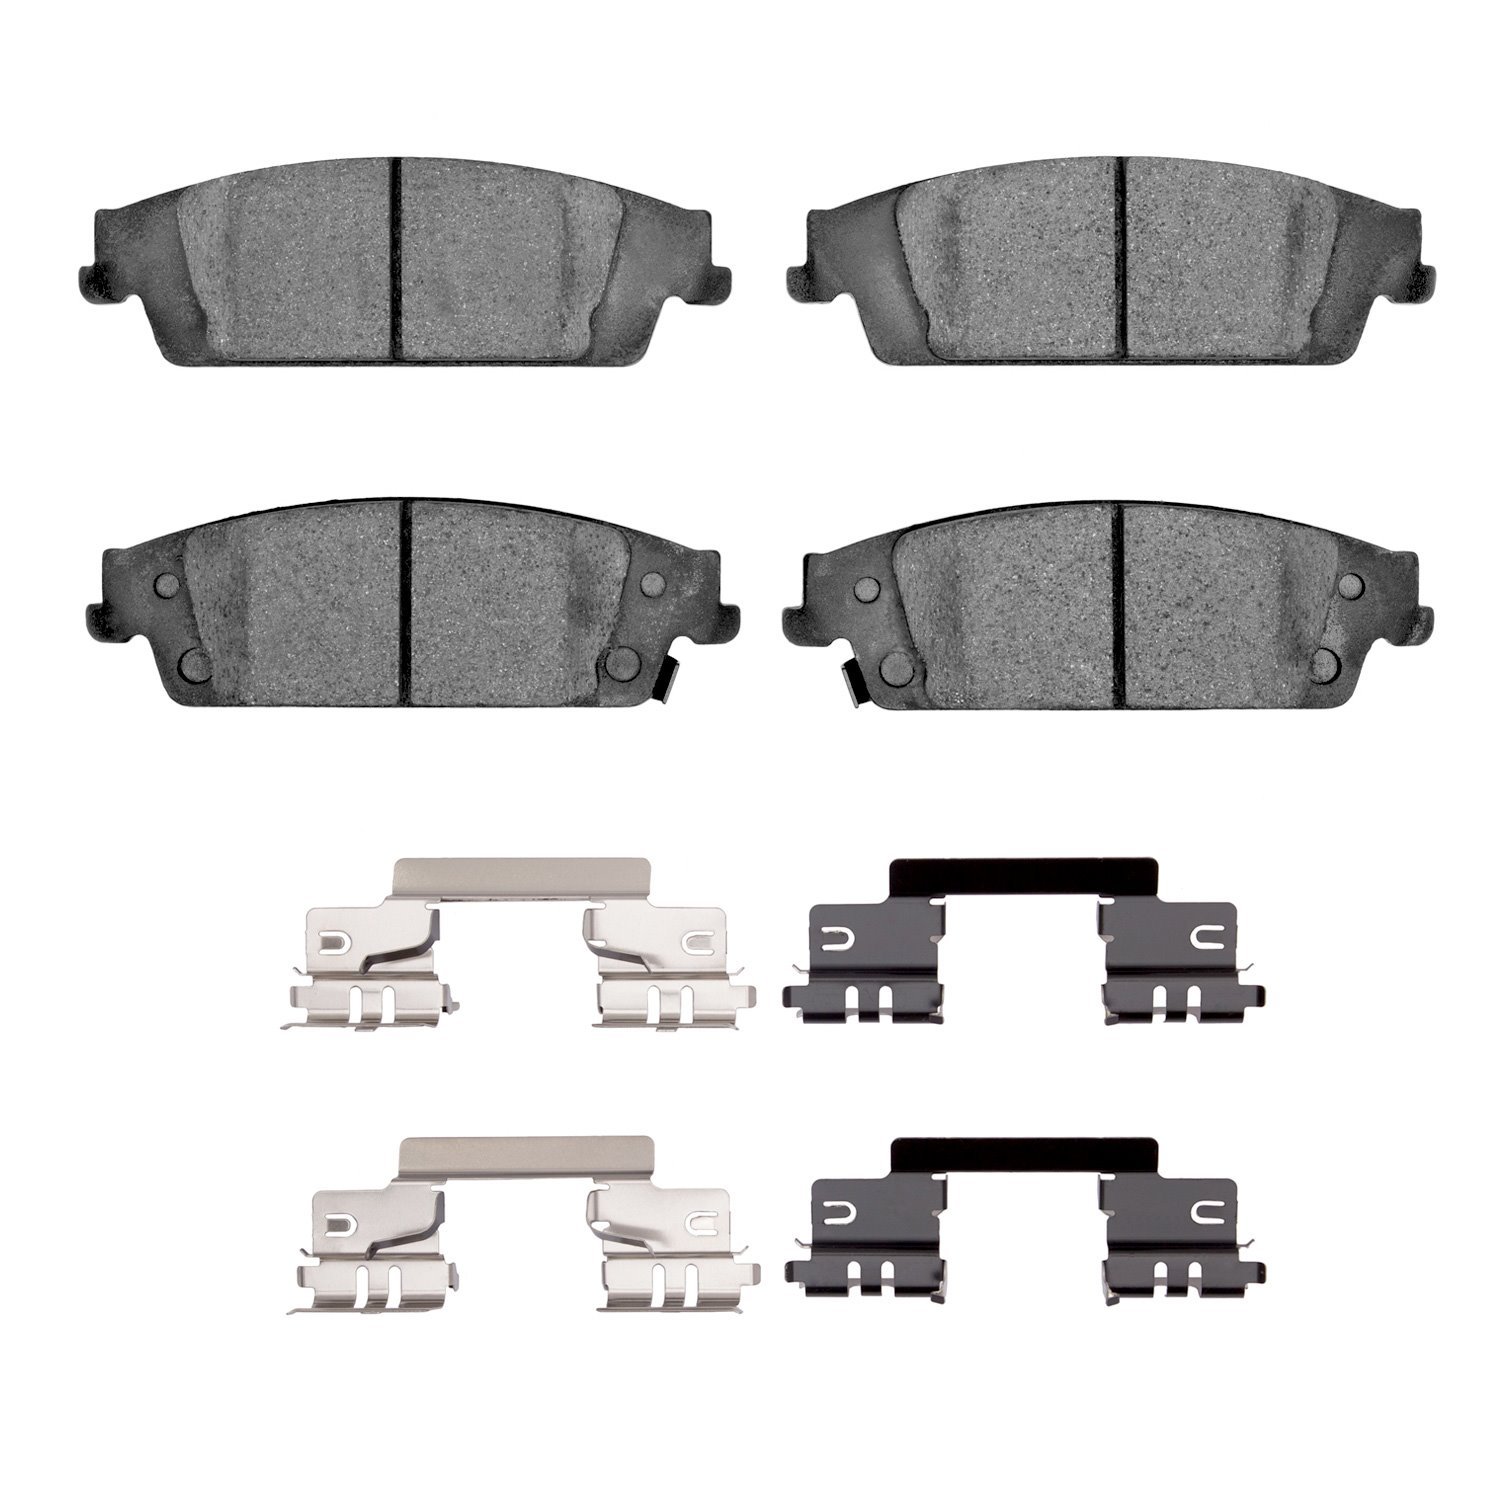 1310-1194-12 3000-Series Ceramic Brake Pads & Hardware Kit, 2014-2020 GM, Position: Rear